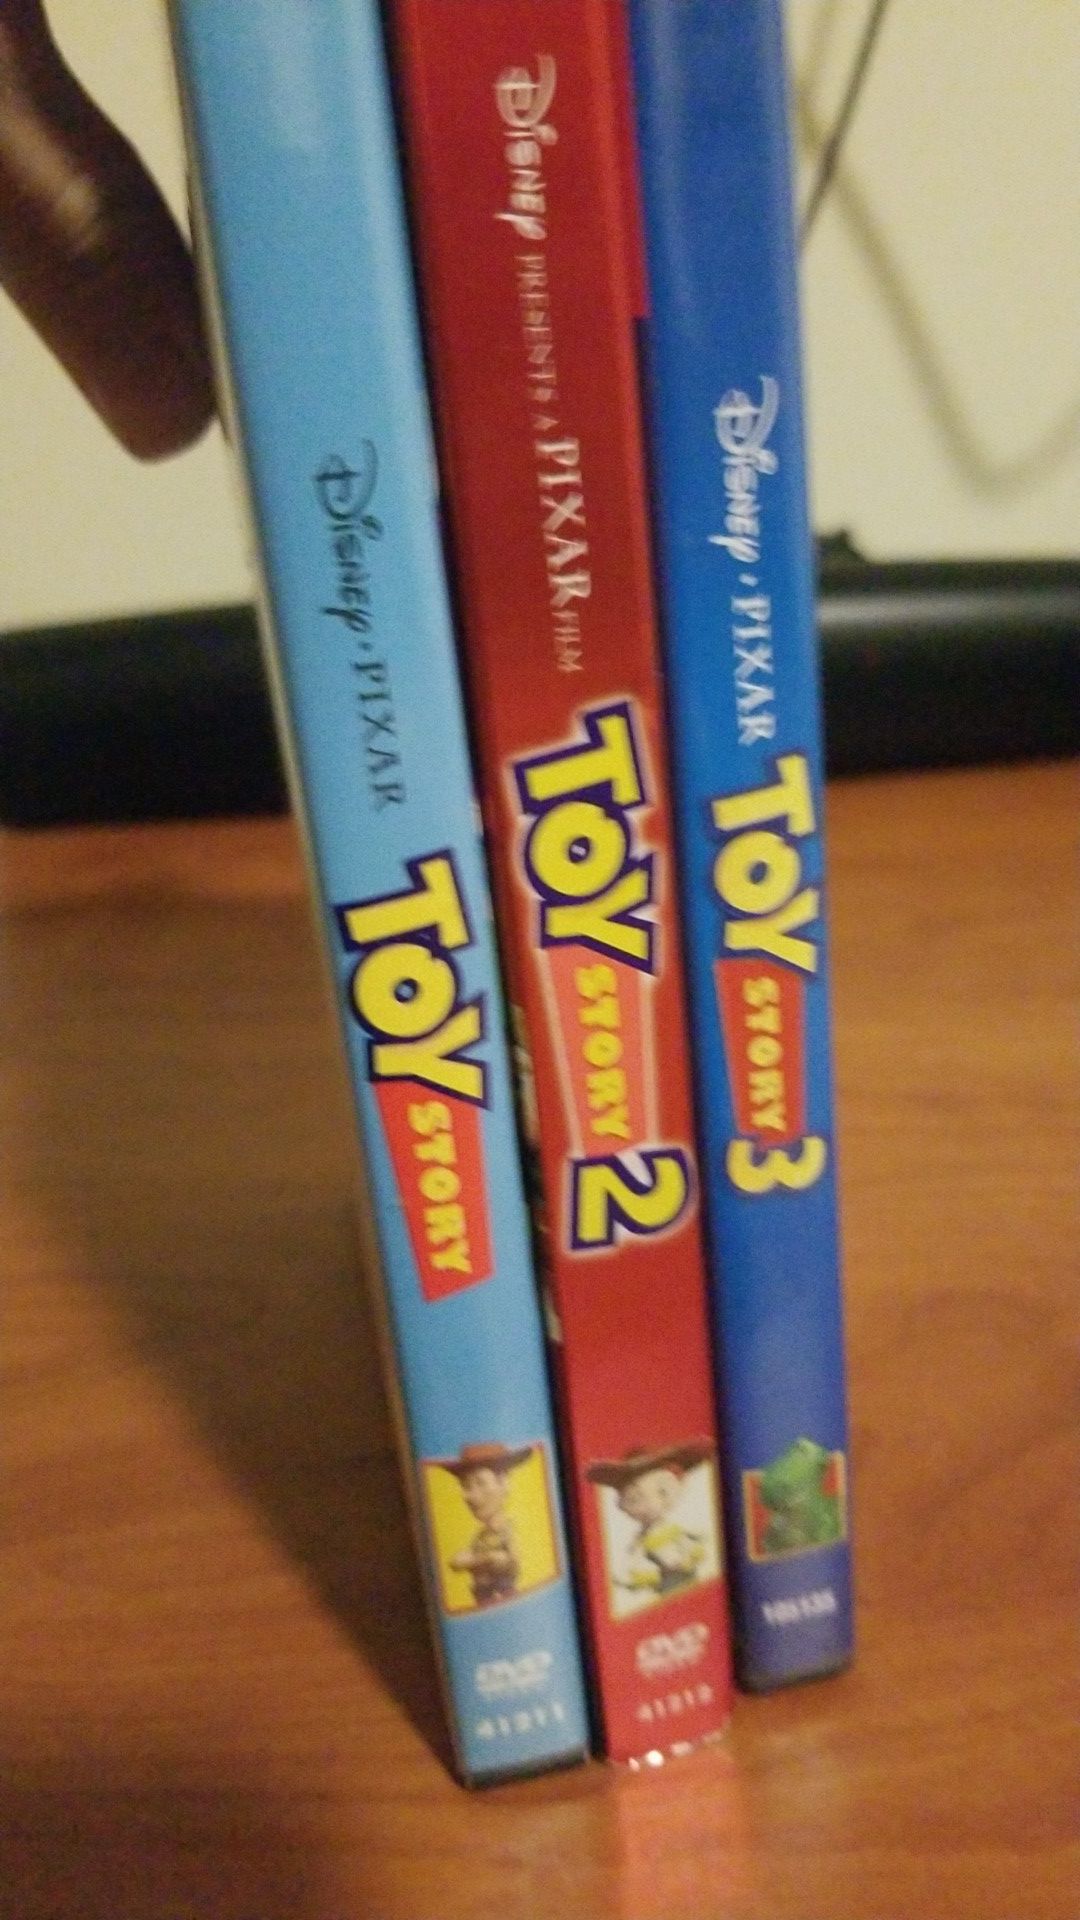 Toy Story 1, 2 & 3 DVD Set